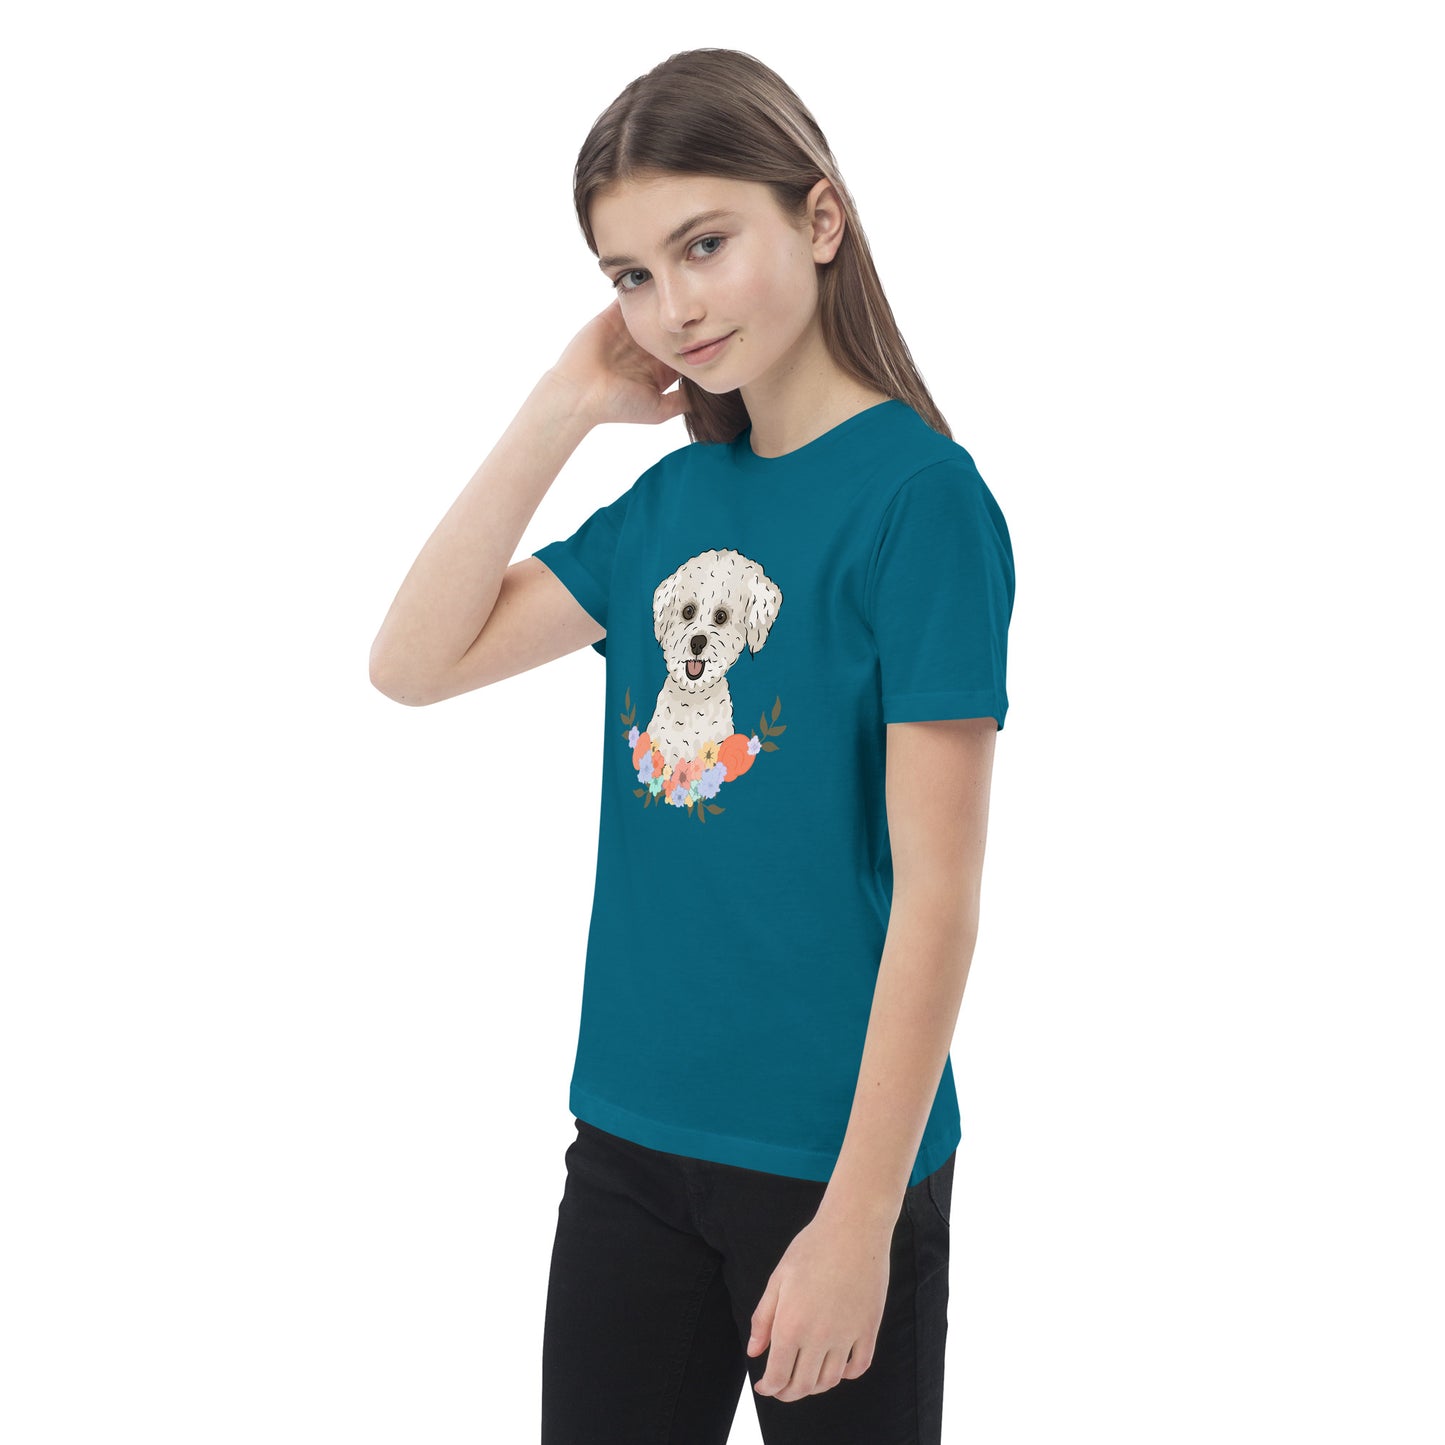 Bichon Frise T Shirt | Pet T Shirt For Girls